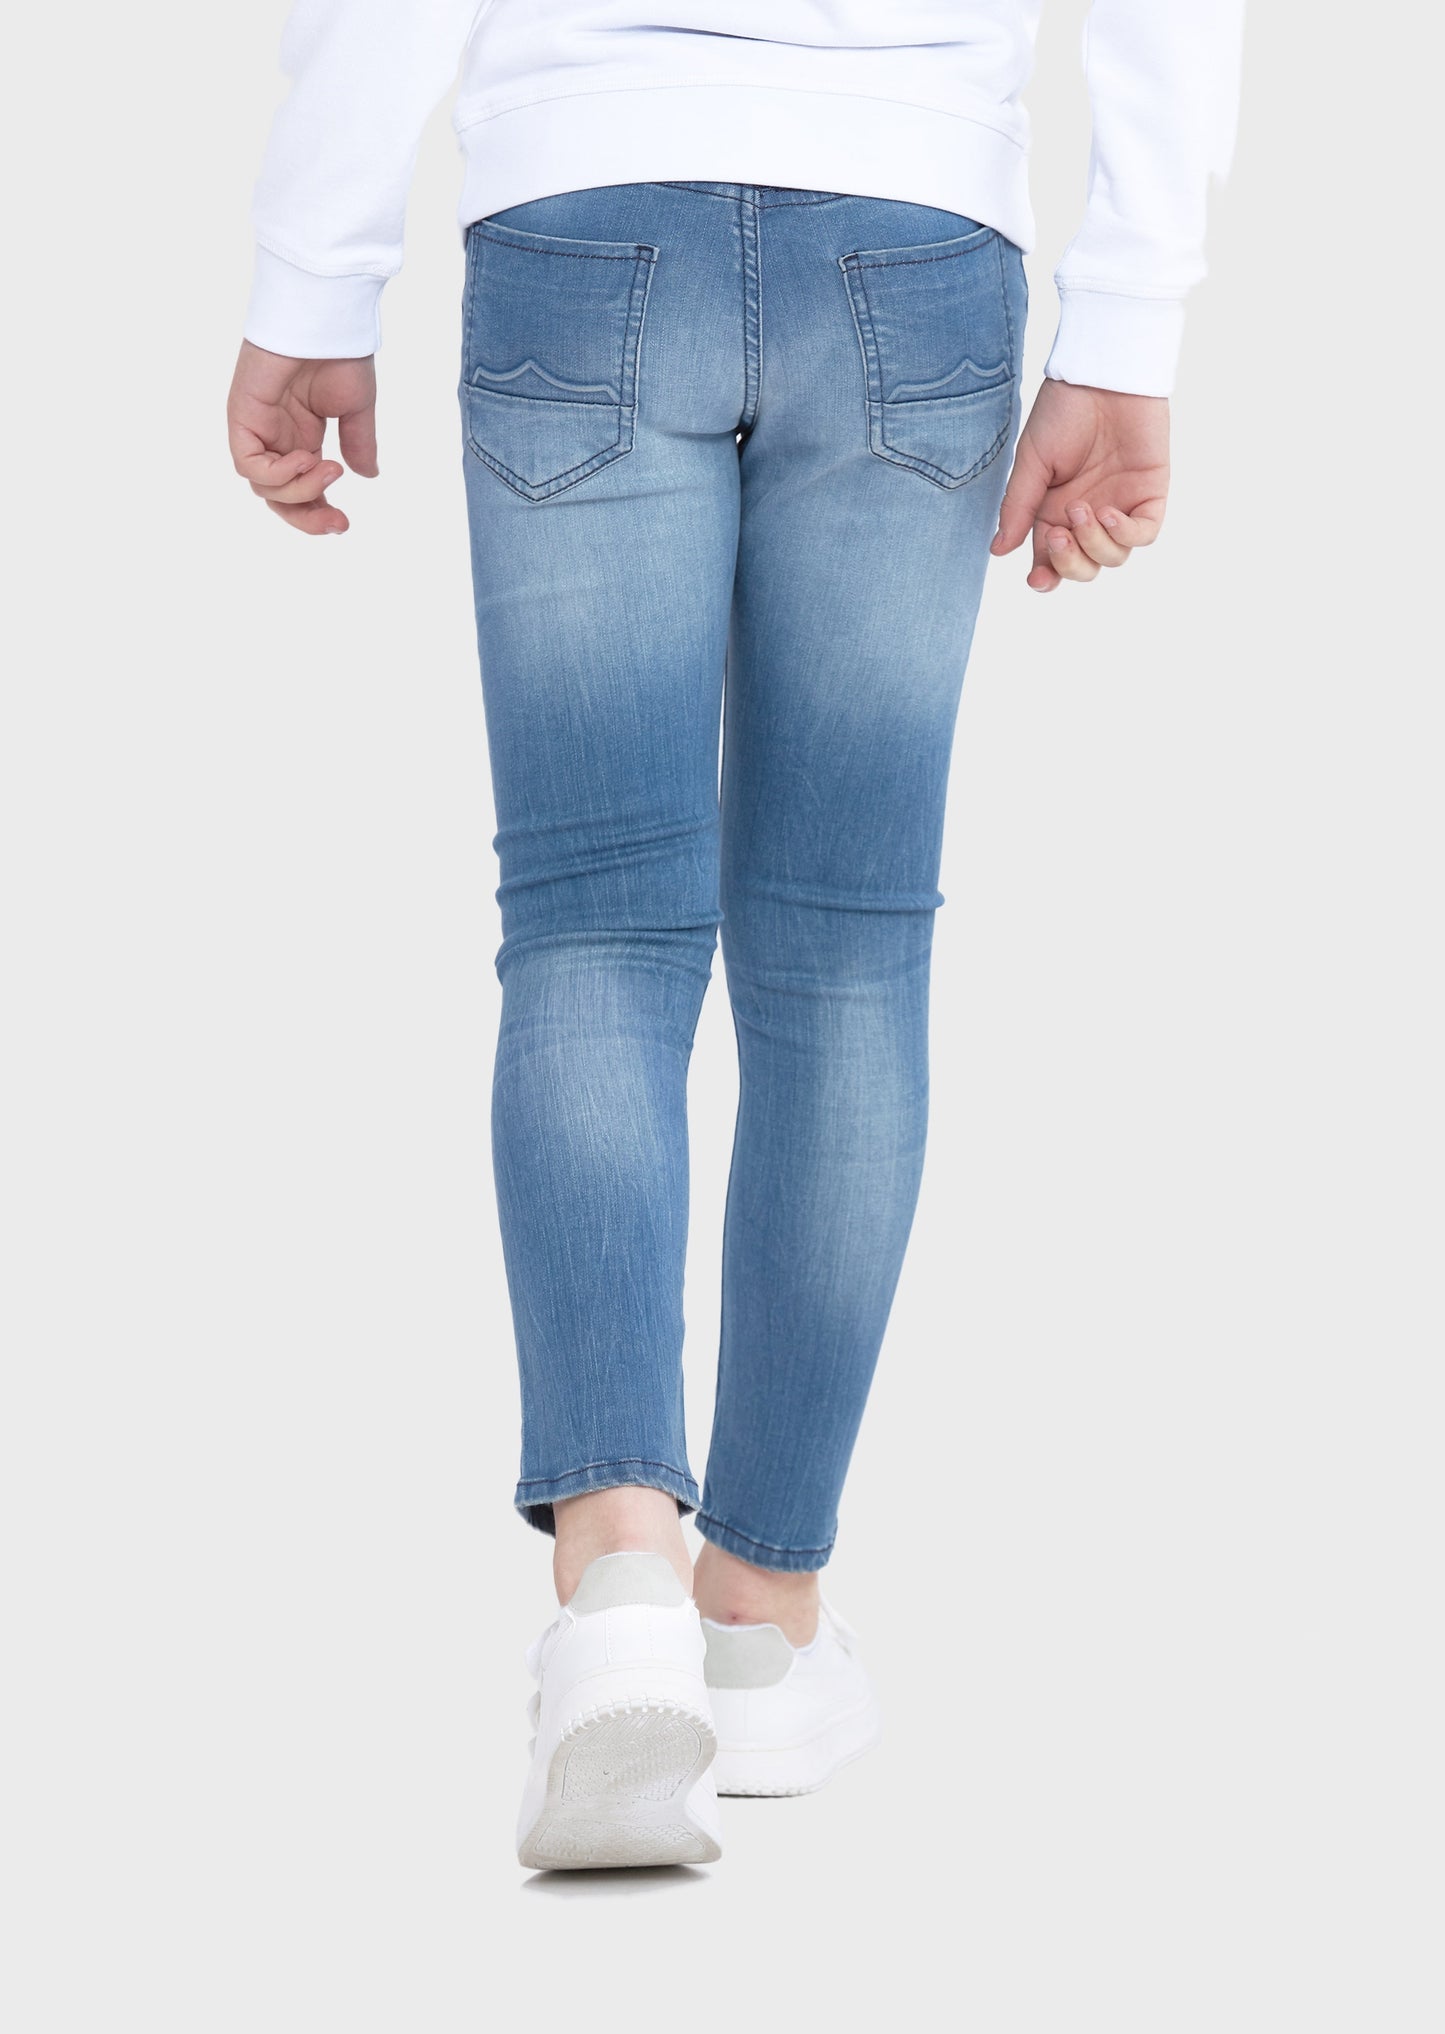 Ryker Laker 438 Kids Jeans